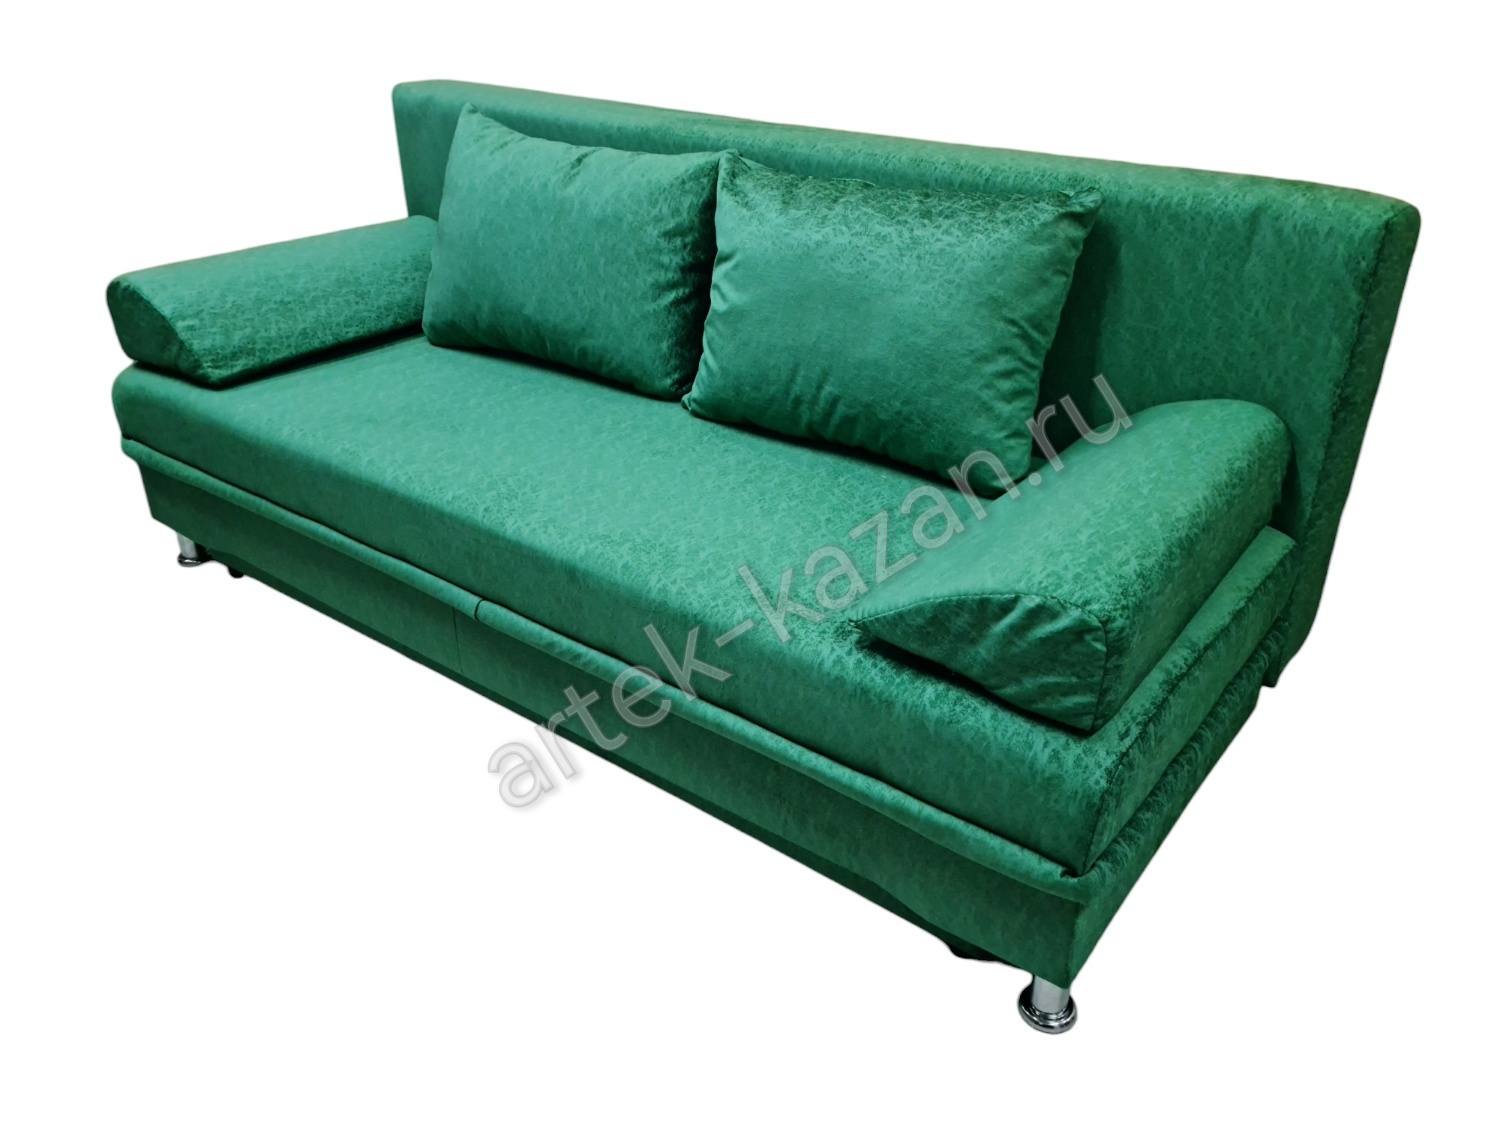 Фото 6. Купить недорогой диван по низкой цене от производителя можно у нас.